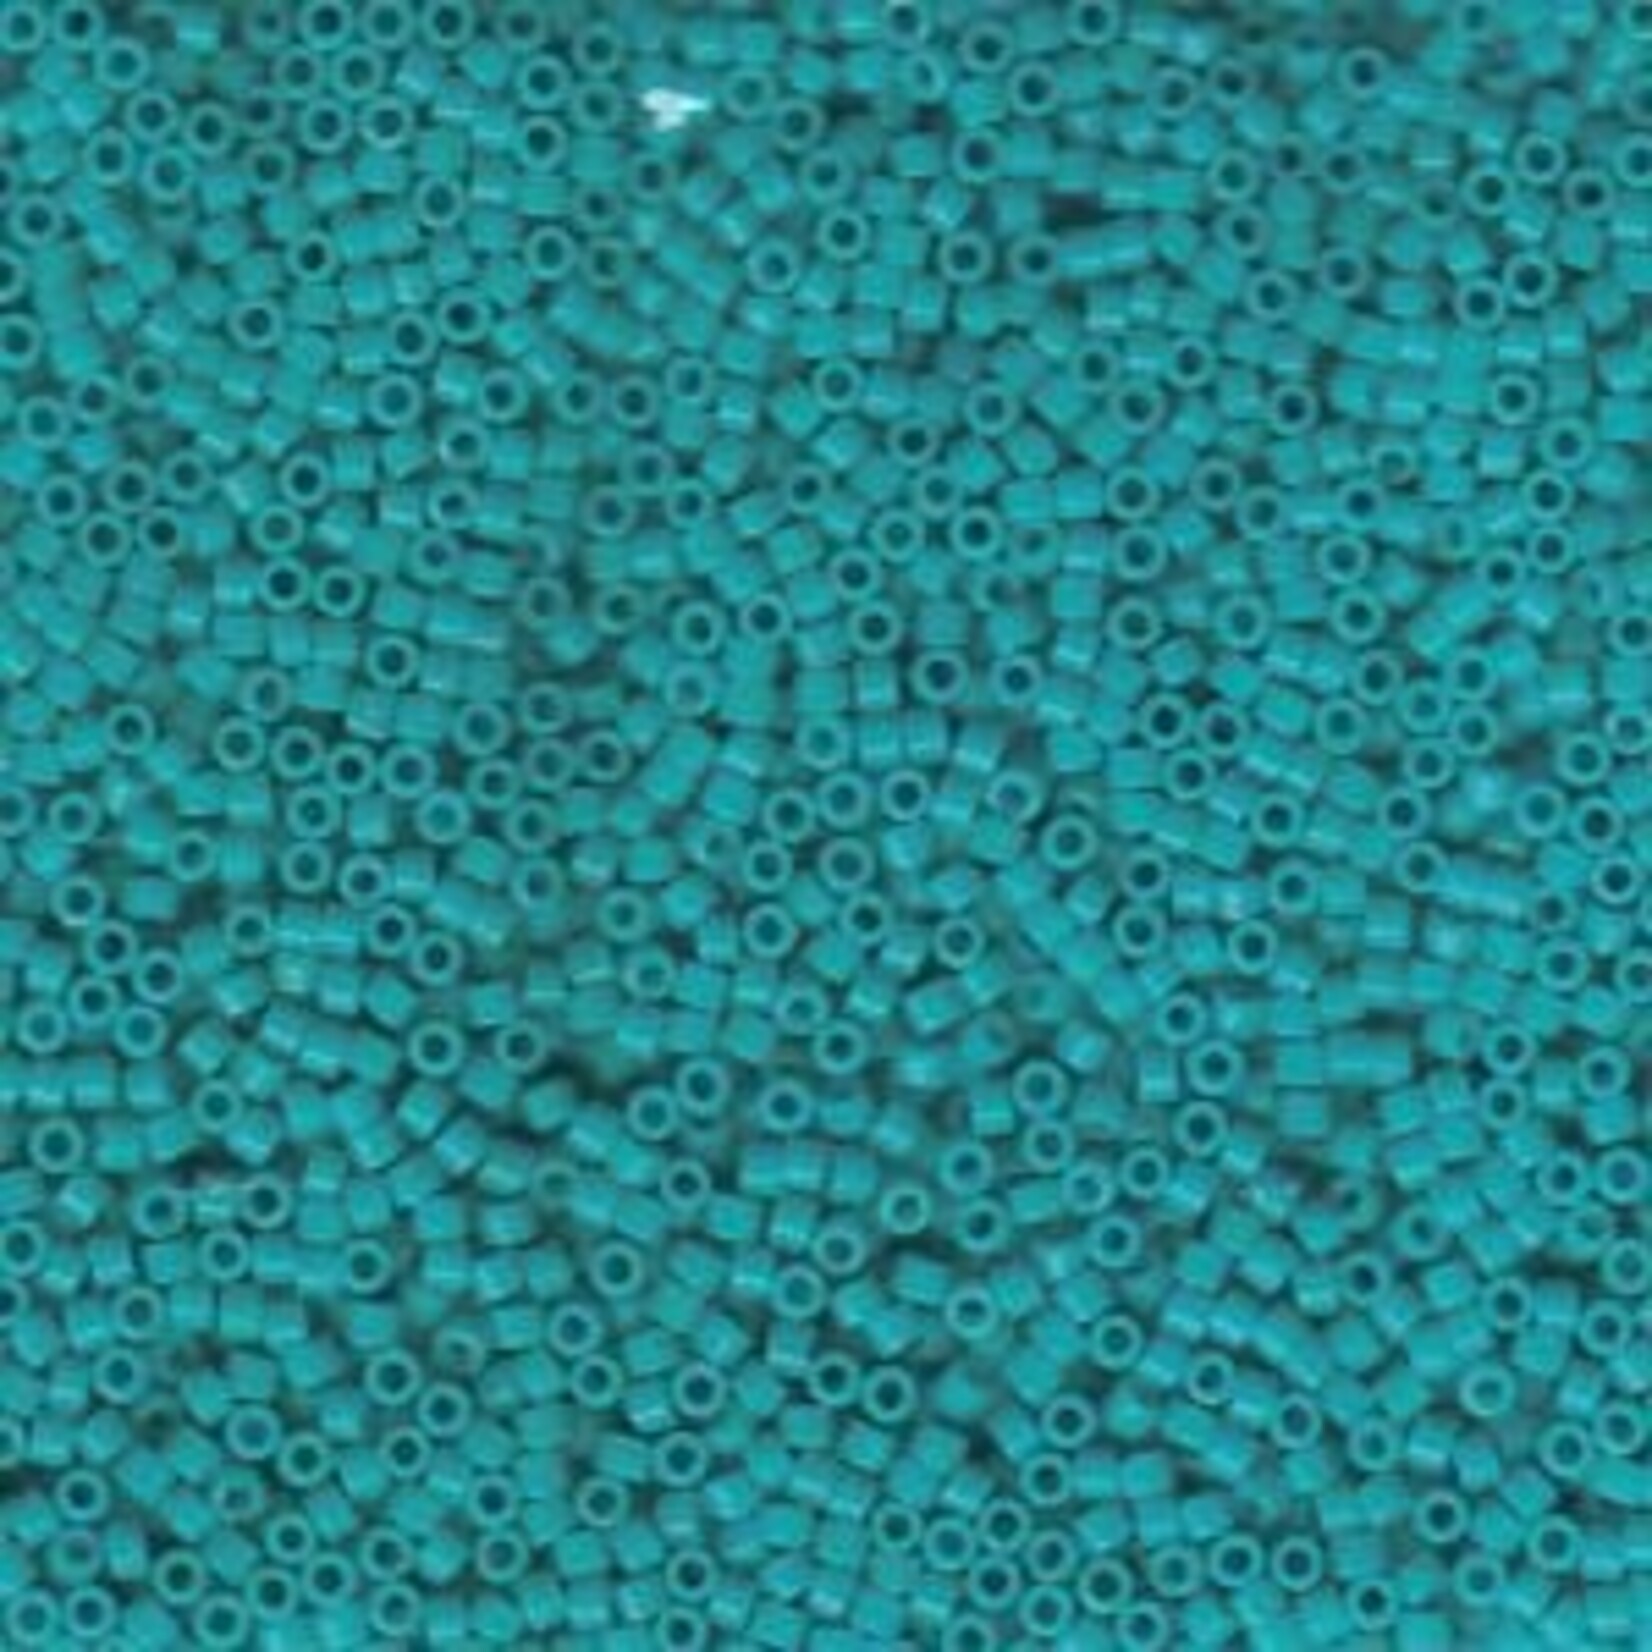 Miyuki Delica 11/0 Opaque Turquoise Seed Beads - 7.2gm Tube